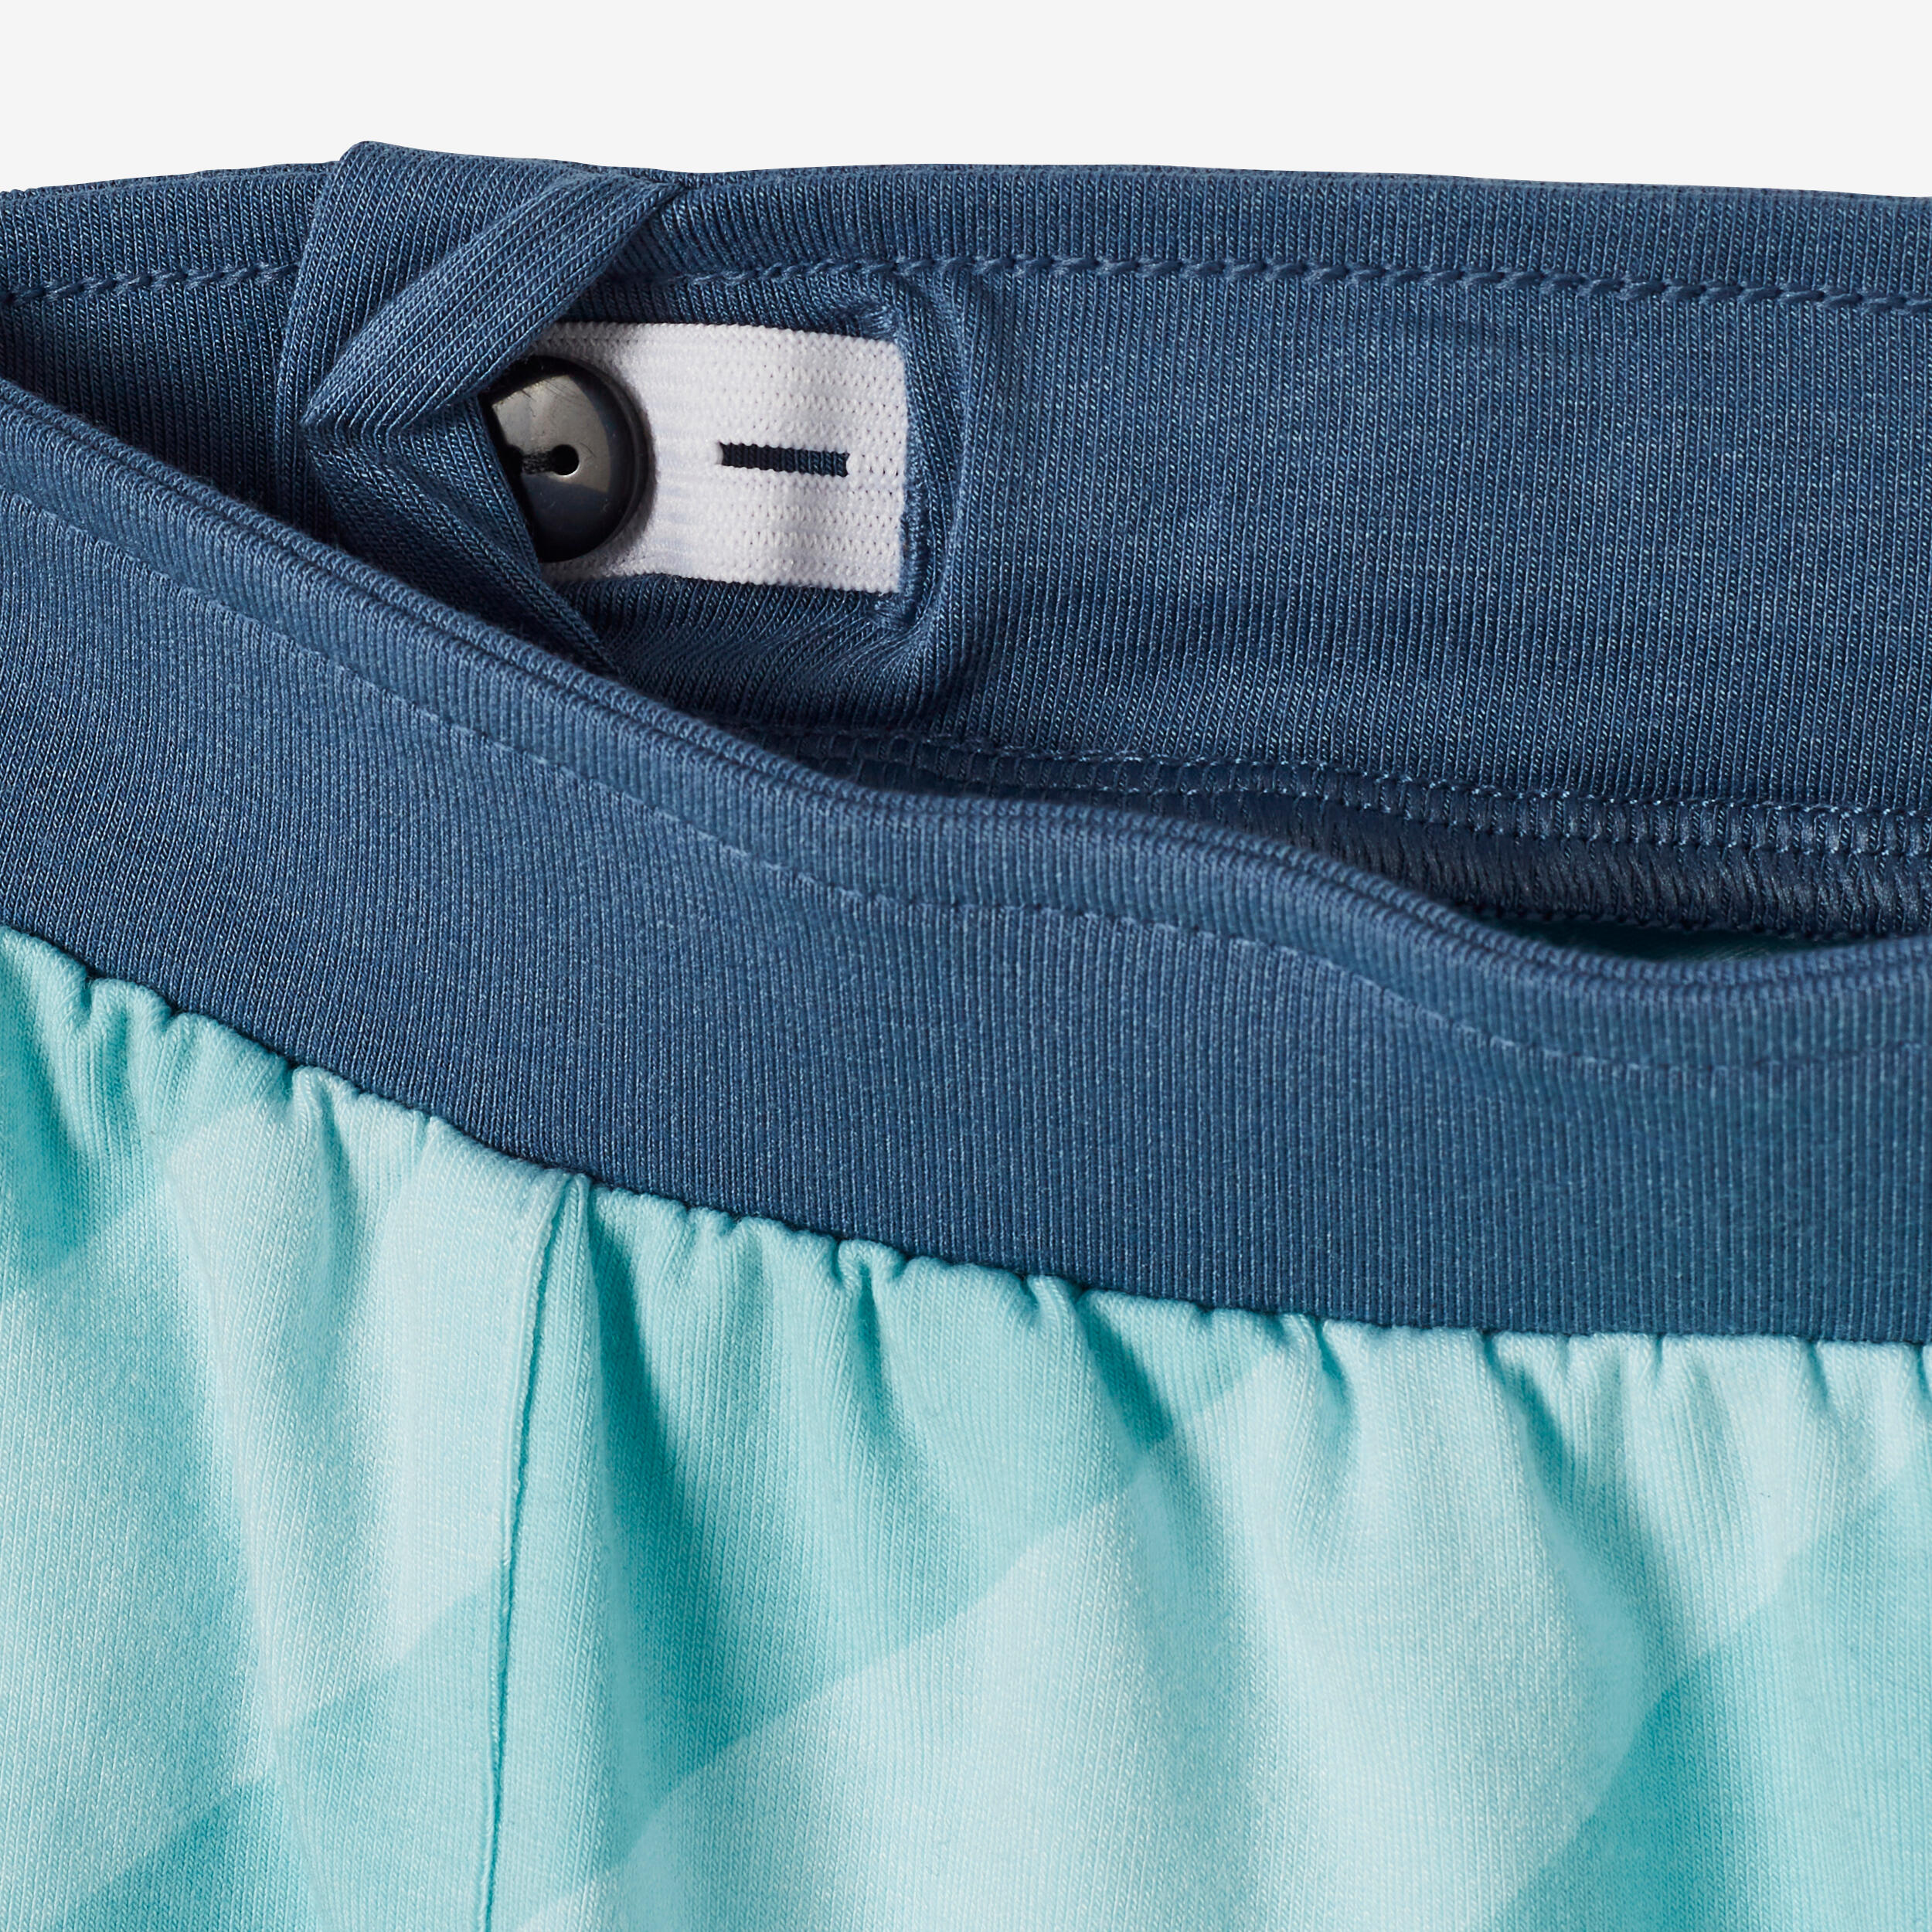 Kids' Breathable Adjustable Shorts 500 - Blue Stripes 6/8